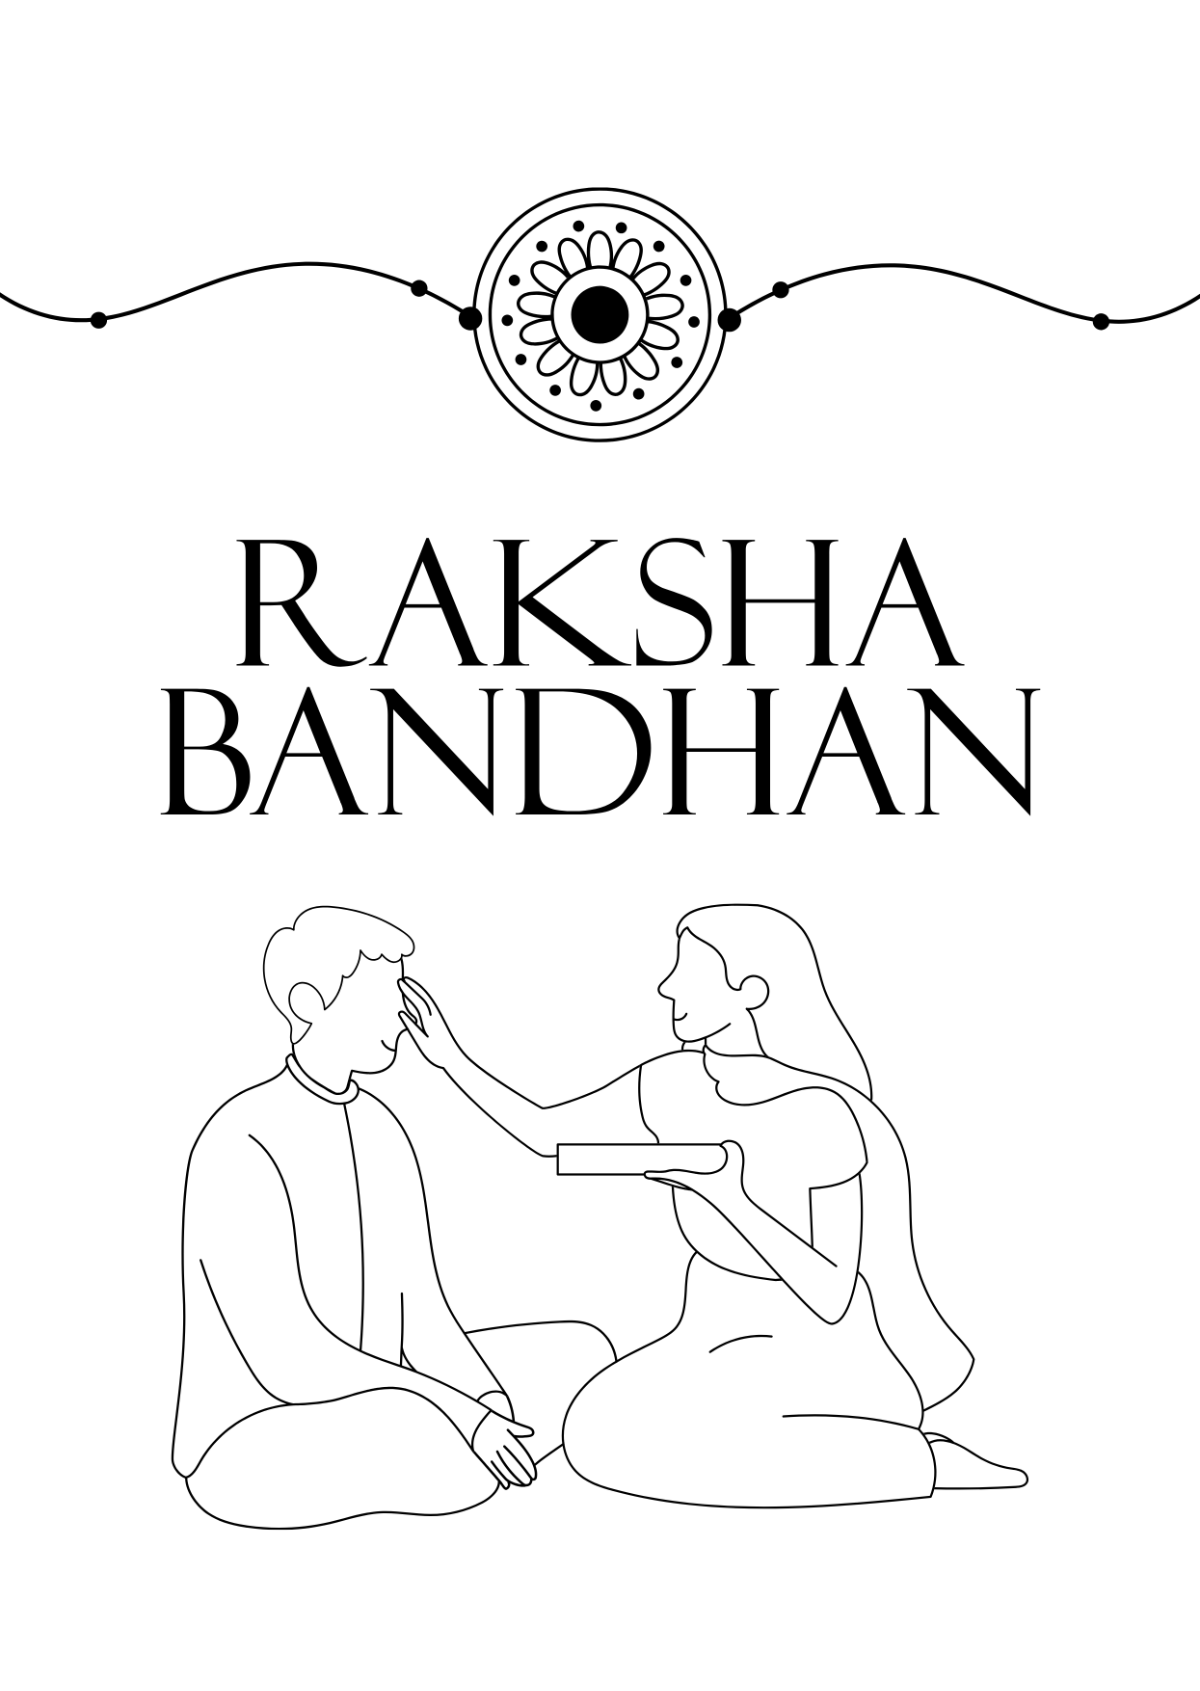 Raksha Bandhan Brother and Sister Drawing